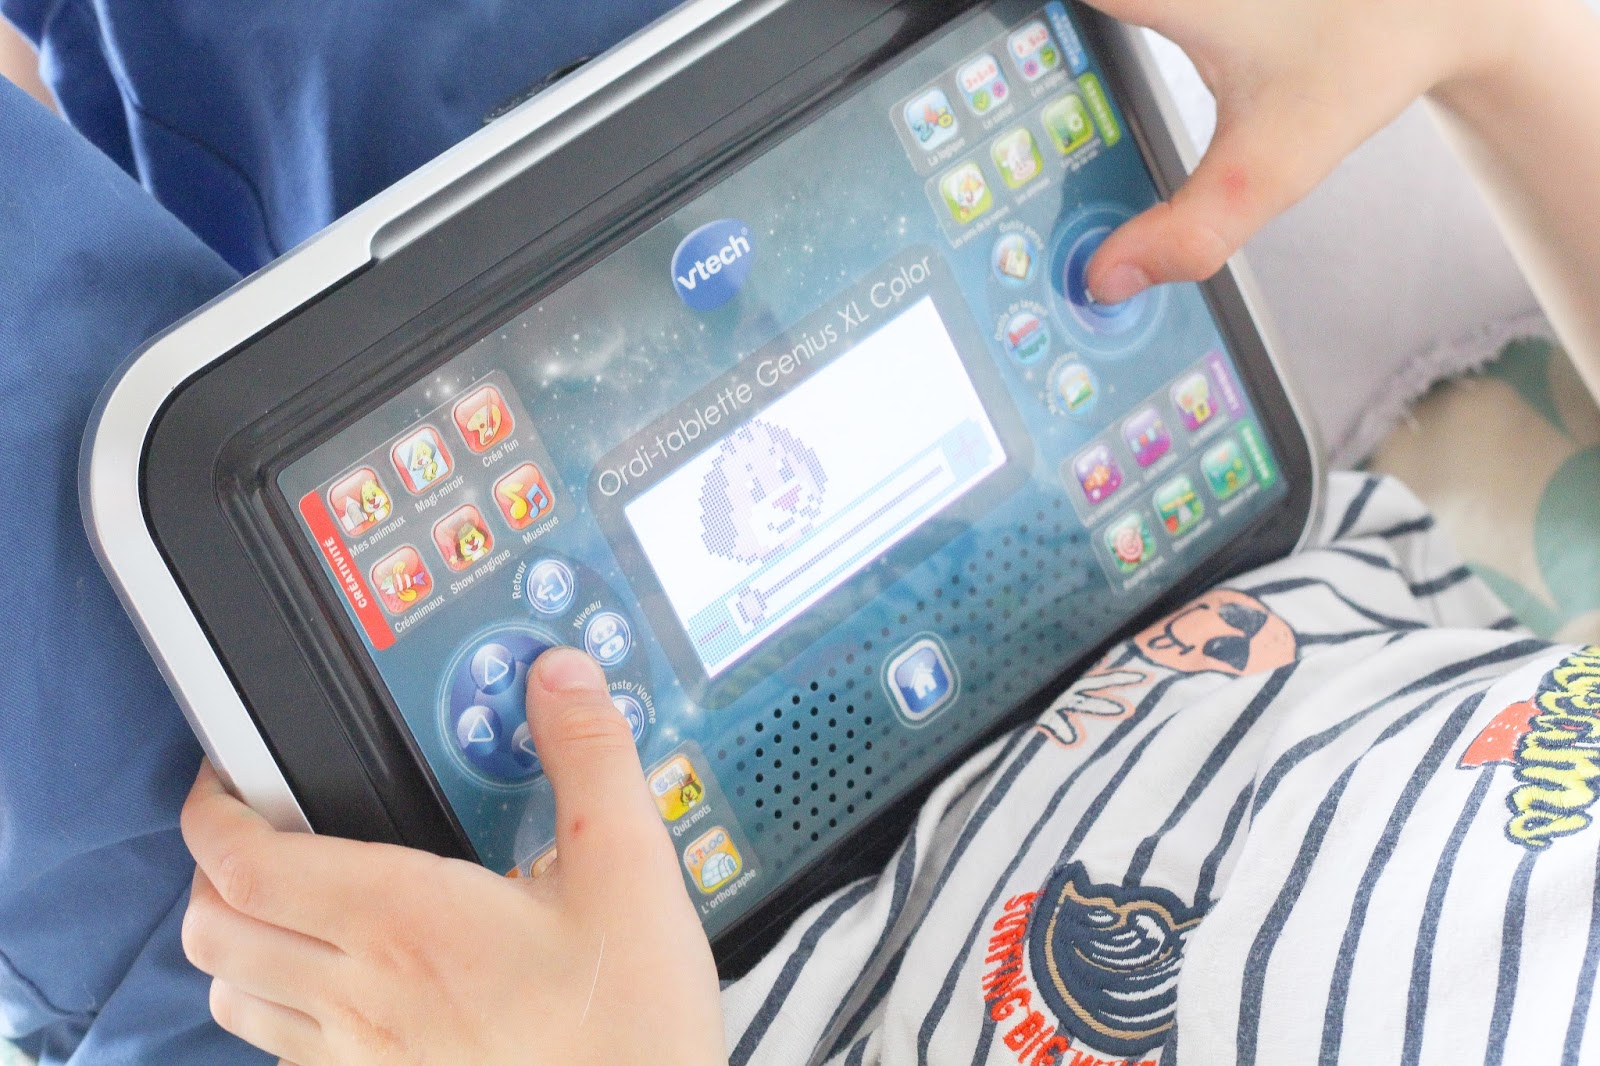 Ordi-tablette Genius XL, Ordinateur portable se transforme en